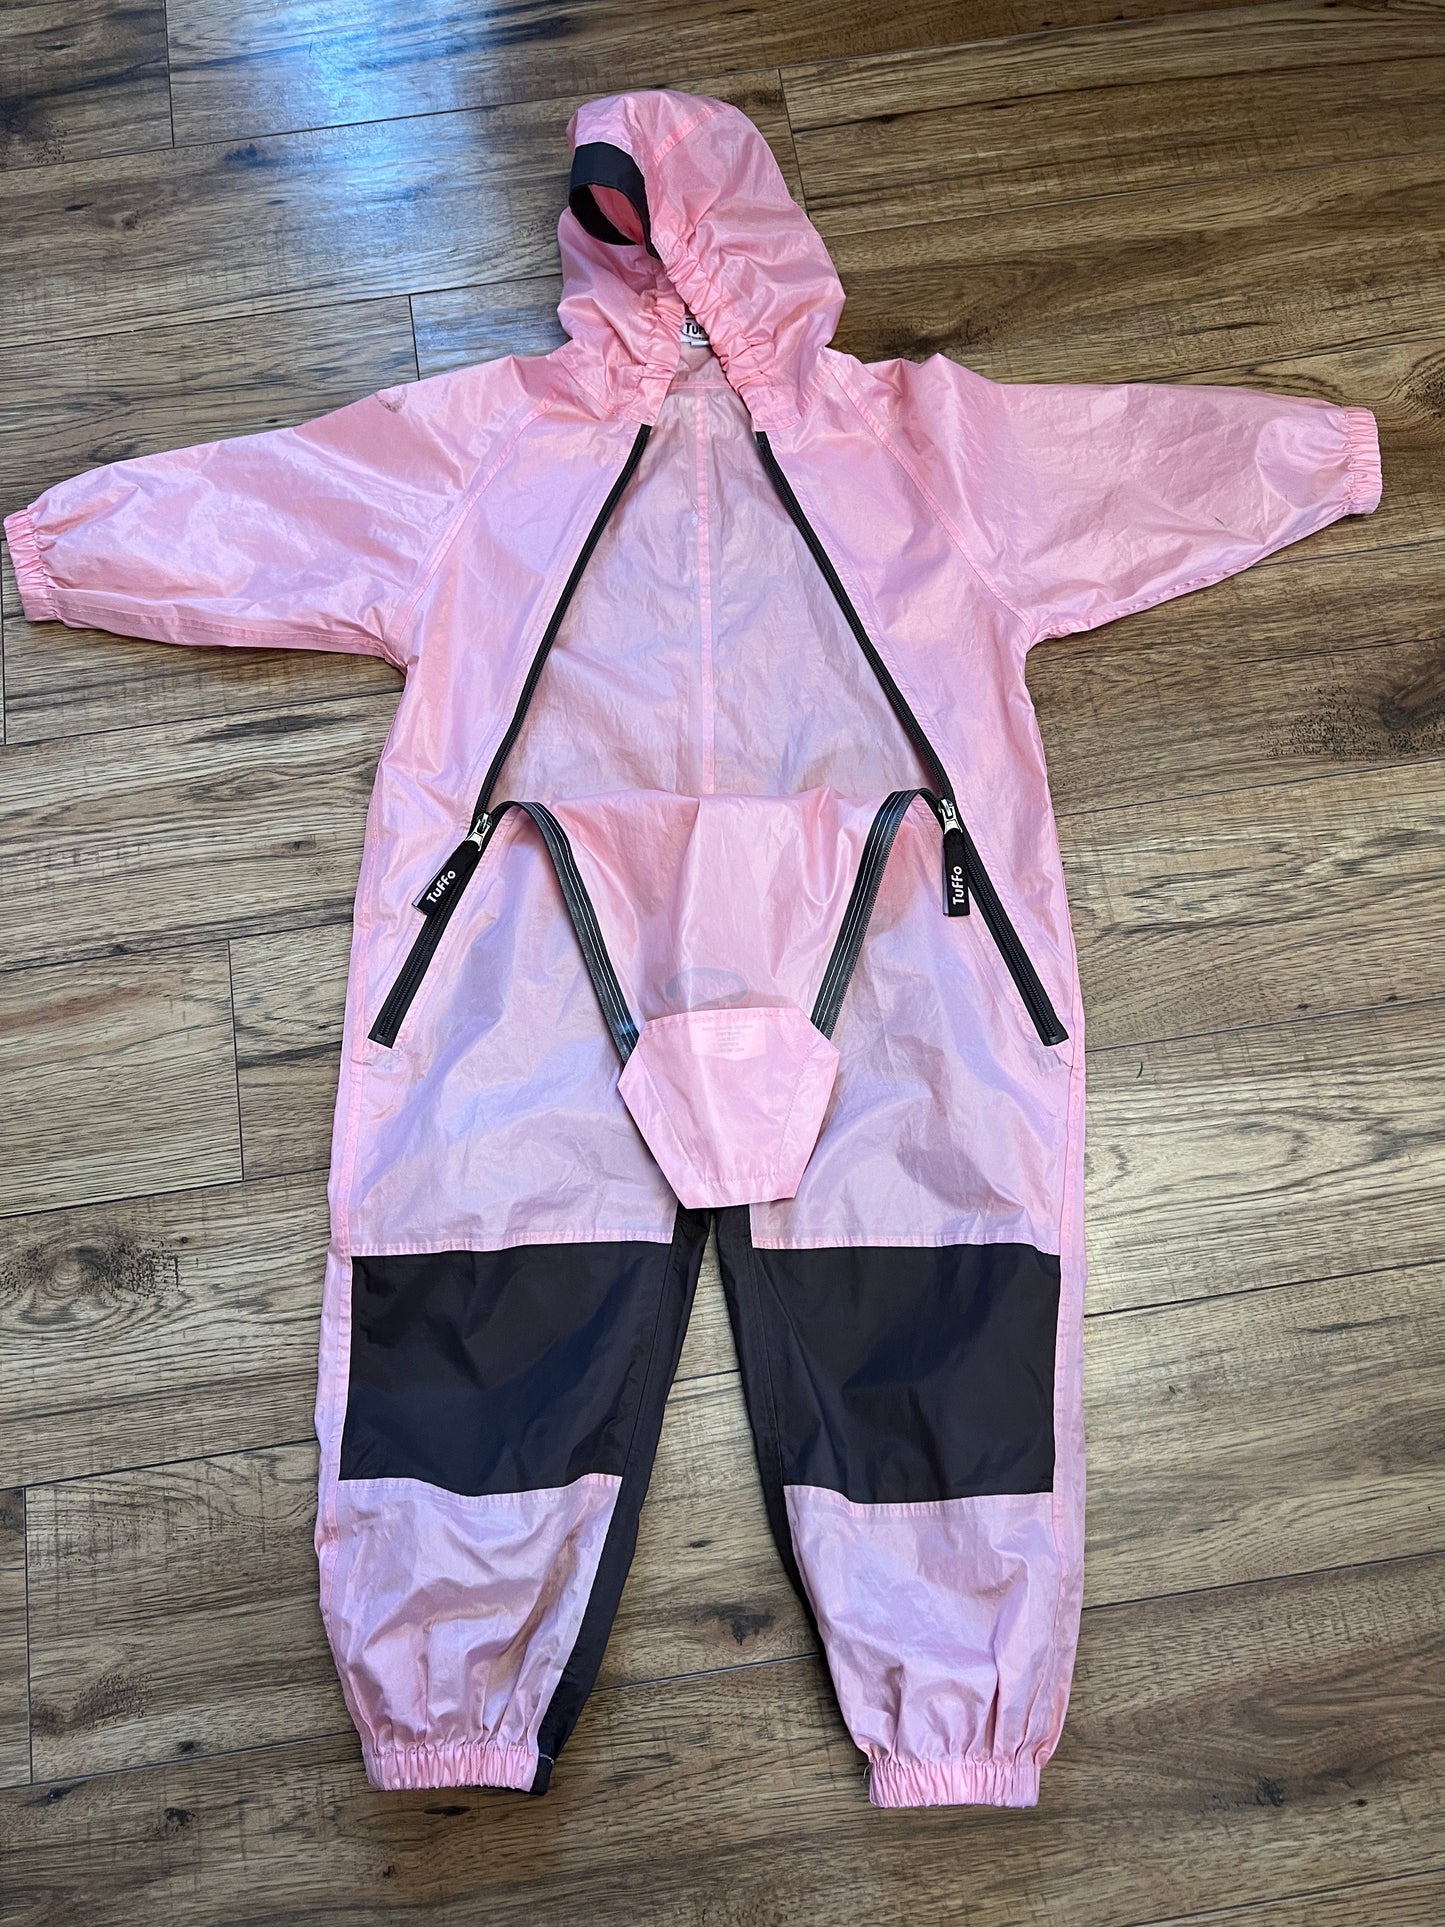 Rain Suit Child Size 4 Muddy Buddy Tuffo Pink